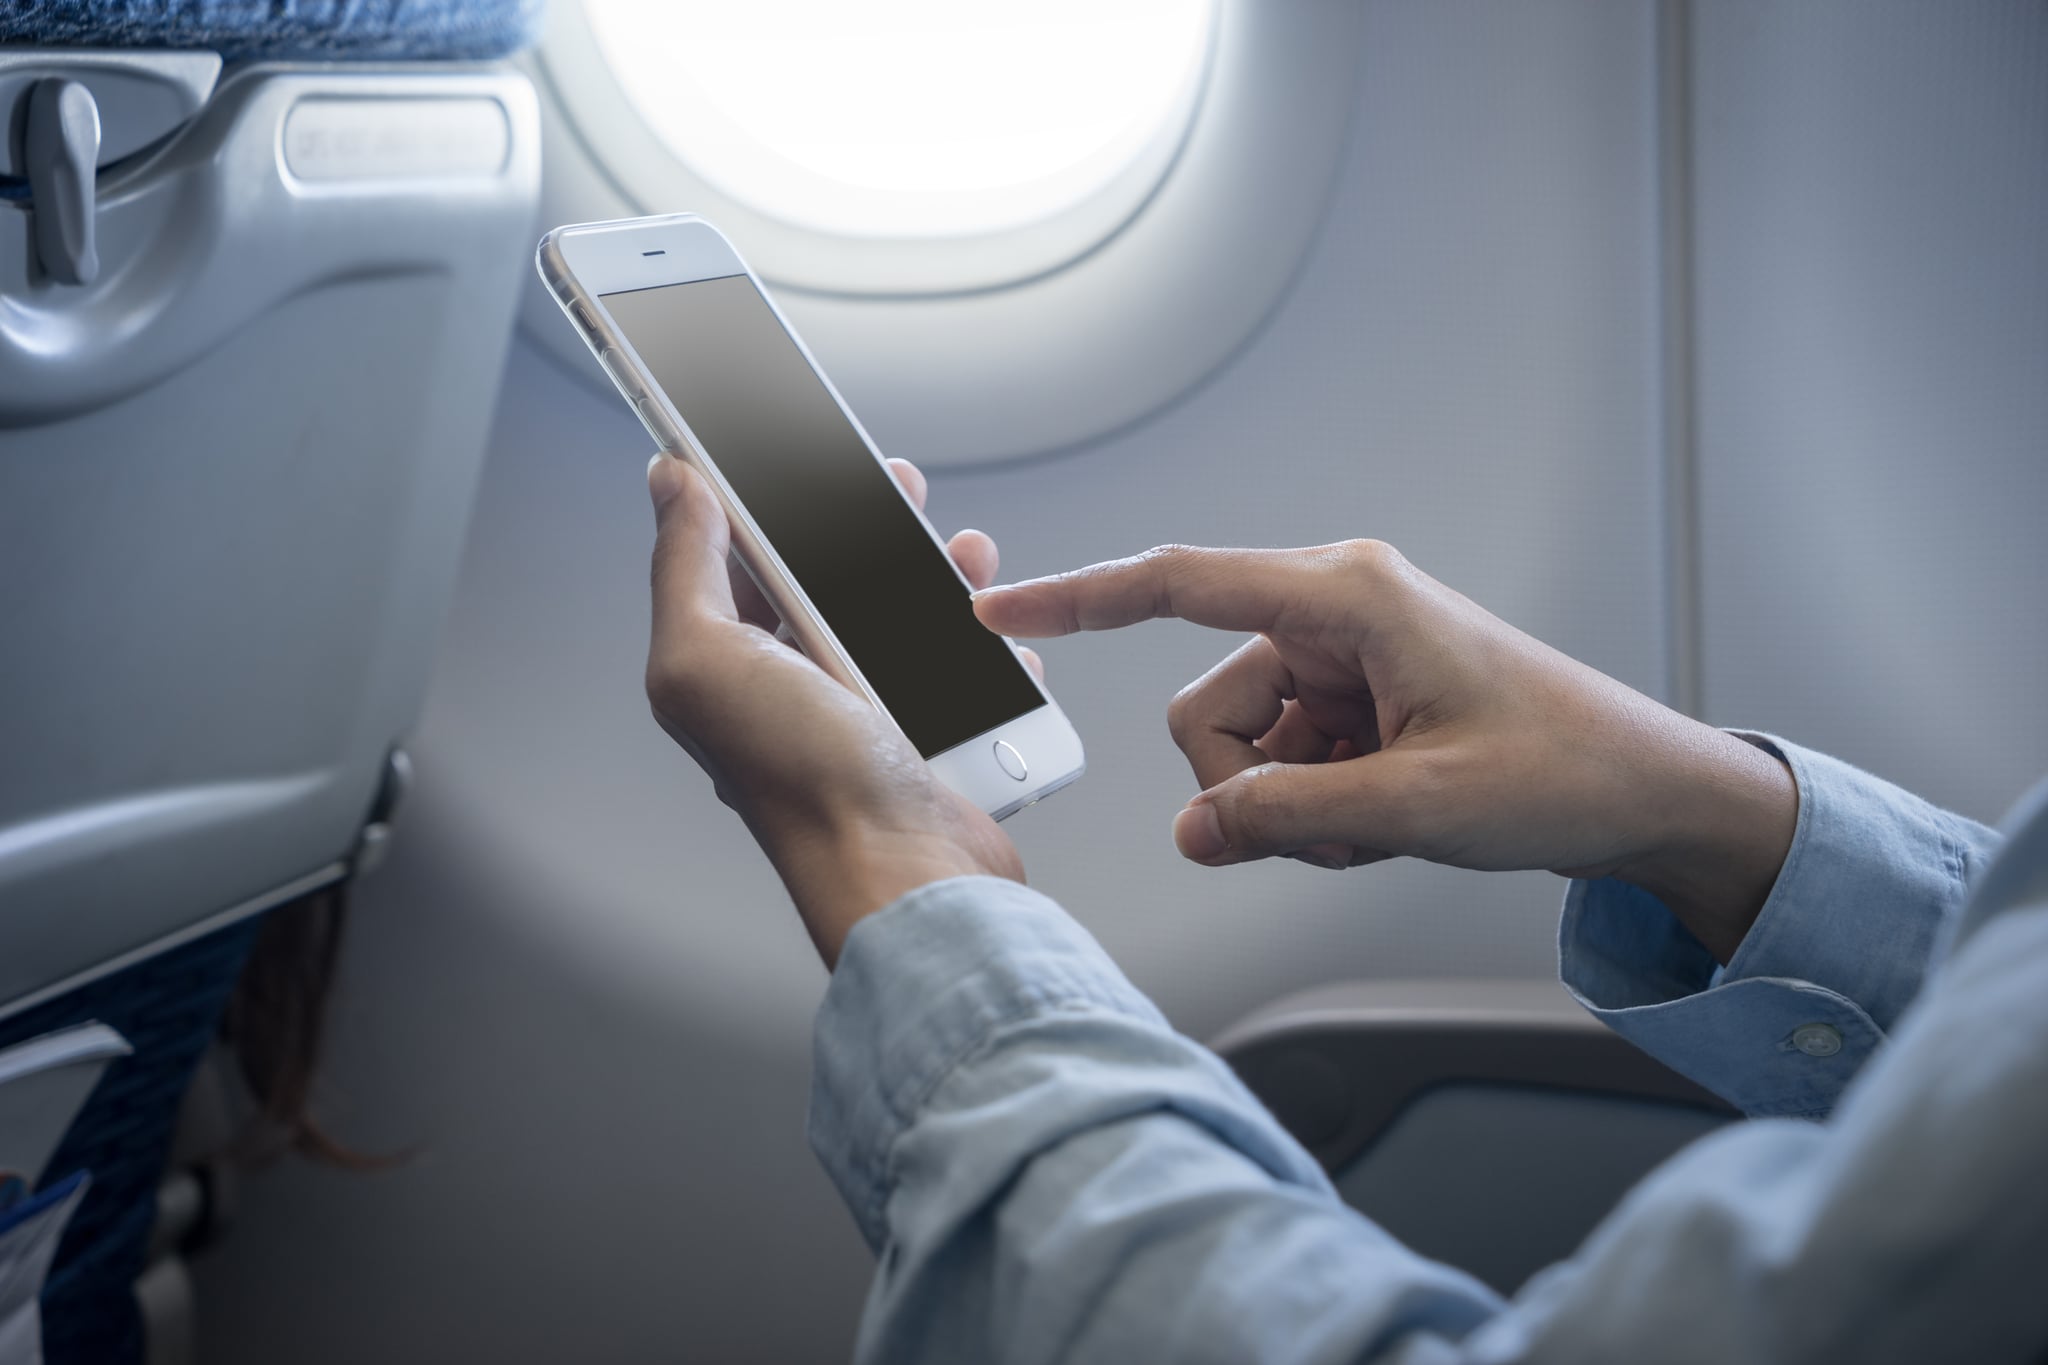 Можно пользоваться телефоном и интернетом. Телефон в самолете. Человек с телефоном в самолете. Телефон в руке. Интернет на борту самолета.